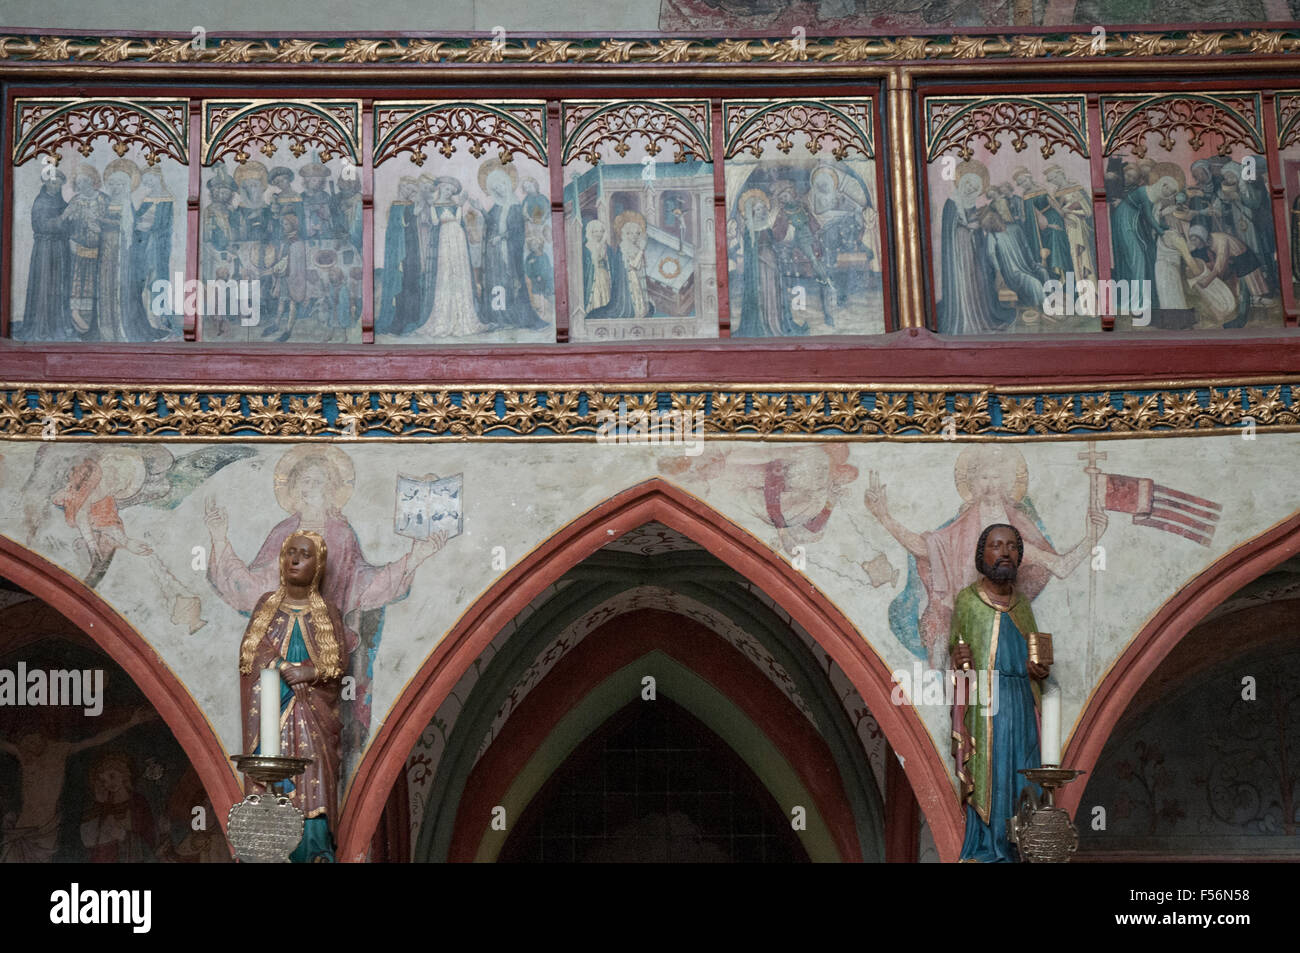 L'intérieur de la fresque médiévale Heiligen-Geist-Hospital, Lubeck, Allemagne Banque D'Images